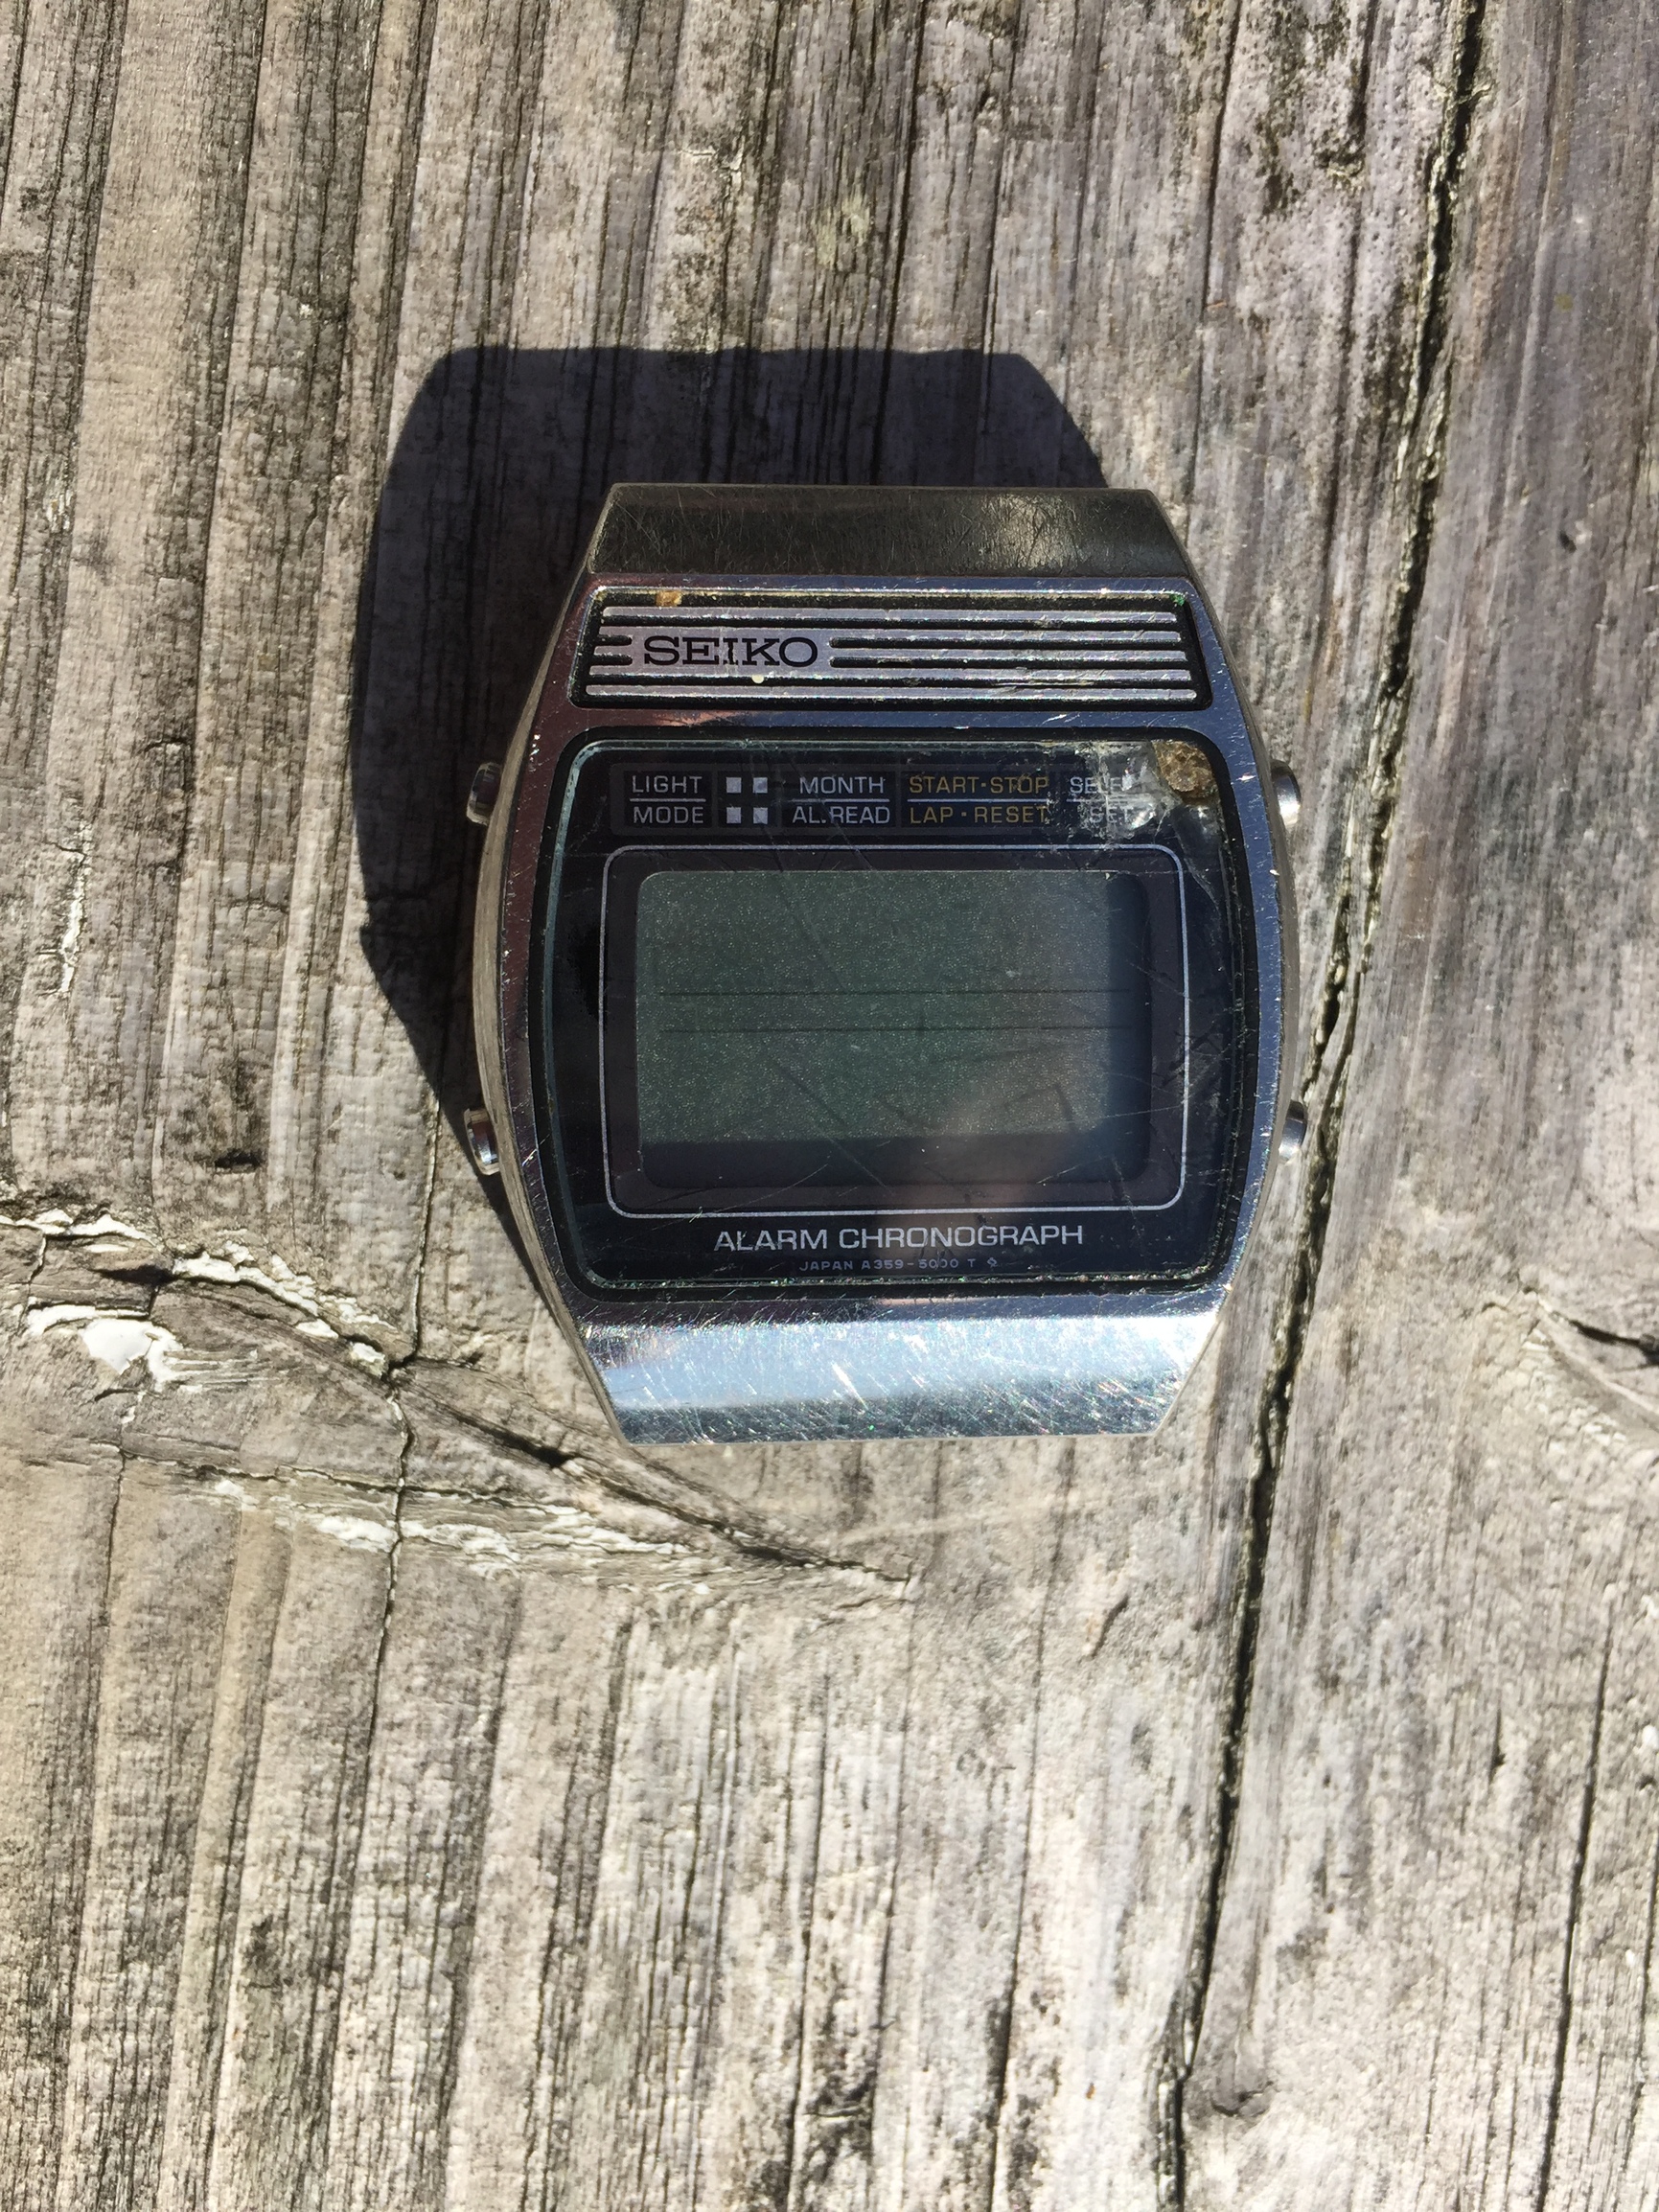 Seiko A359 5010 LCD werkt niet na batterijwissel - Vintage Horlogeforum -   - het forum voor liefhebbers van horloges